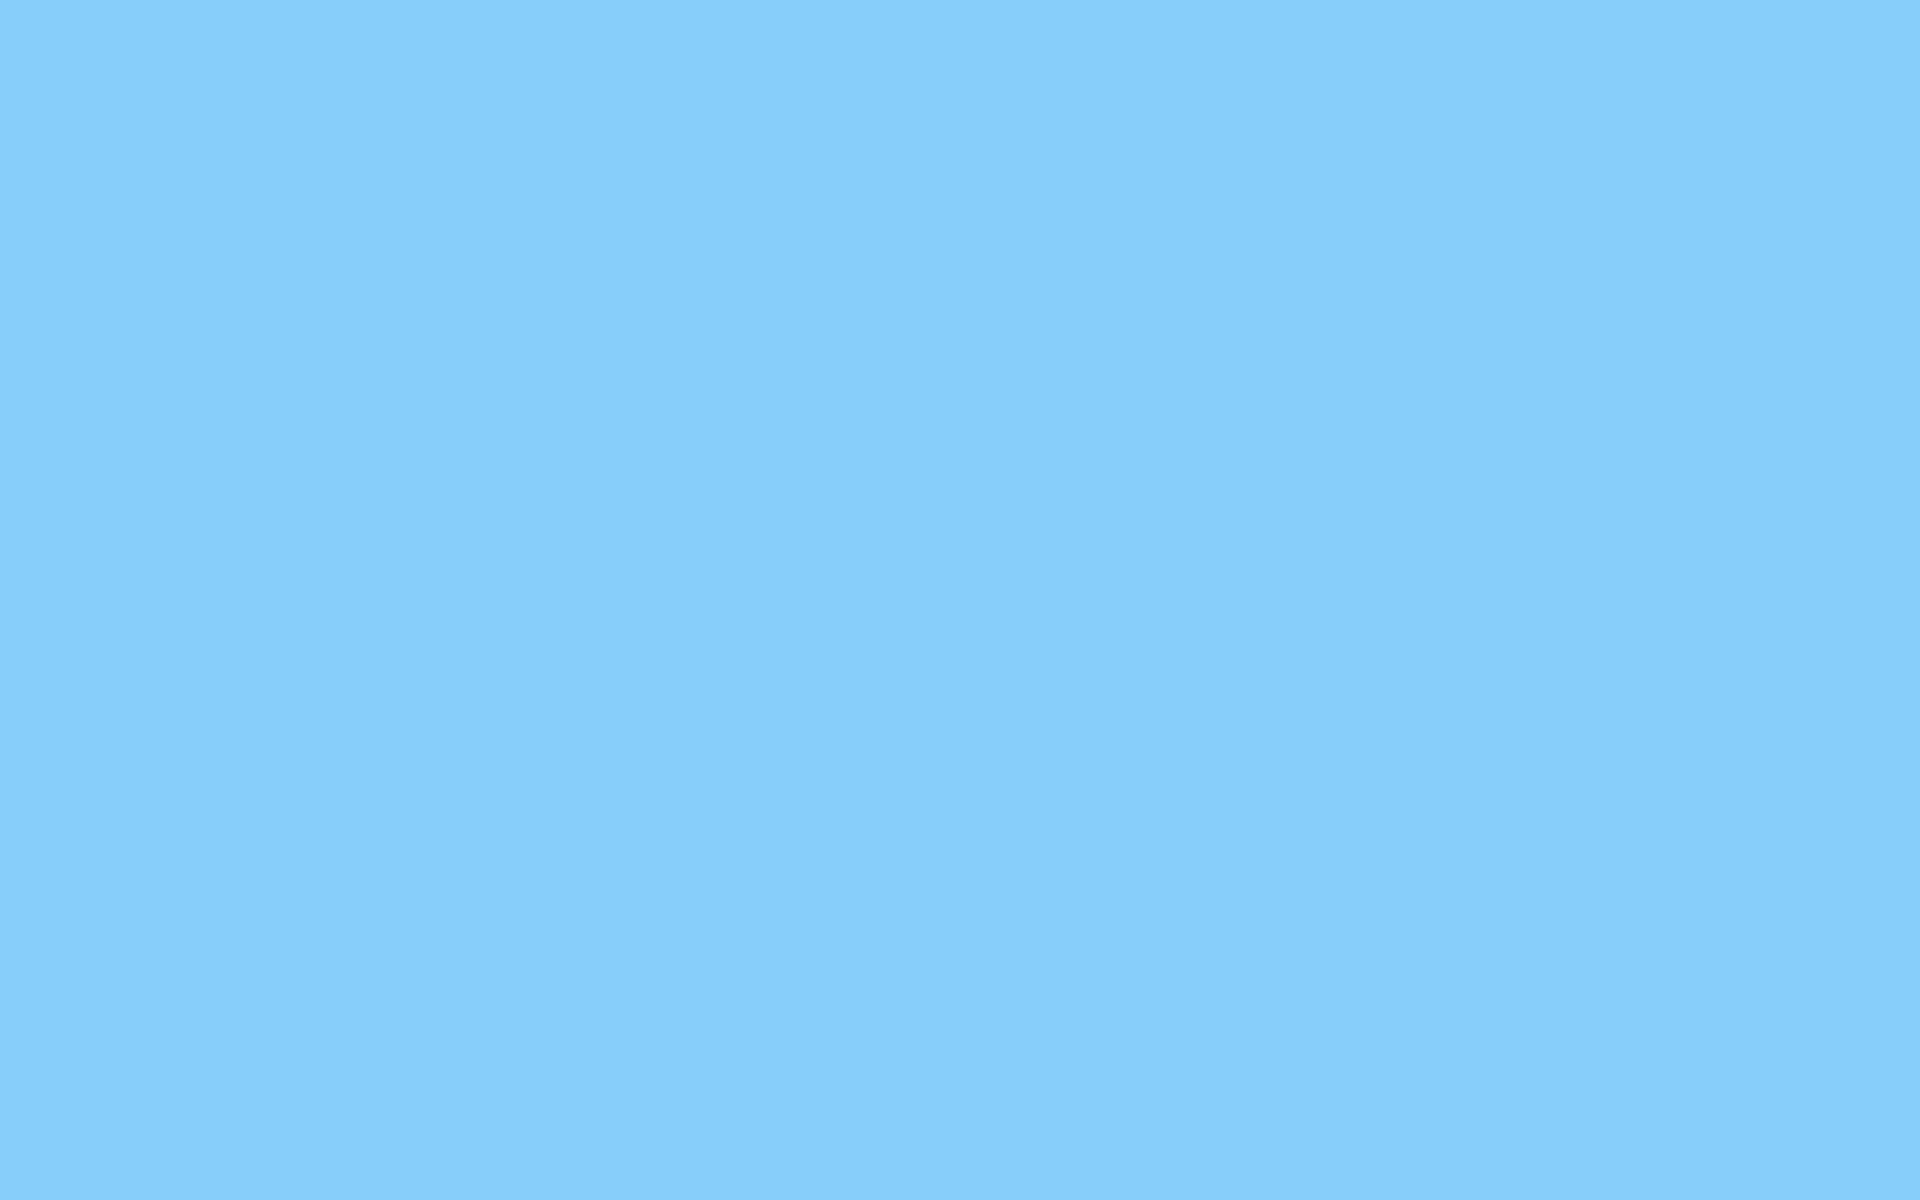 Colorsólido Azul Pastel Sencillo Y Suave. Fondo de pantalla